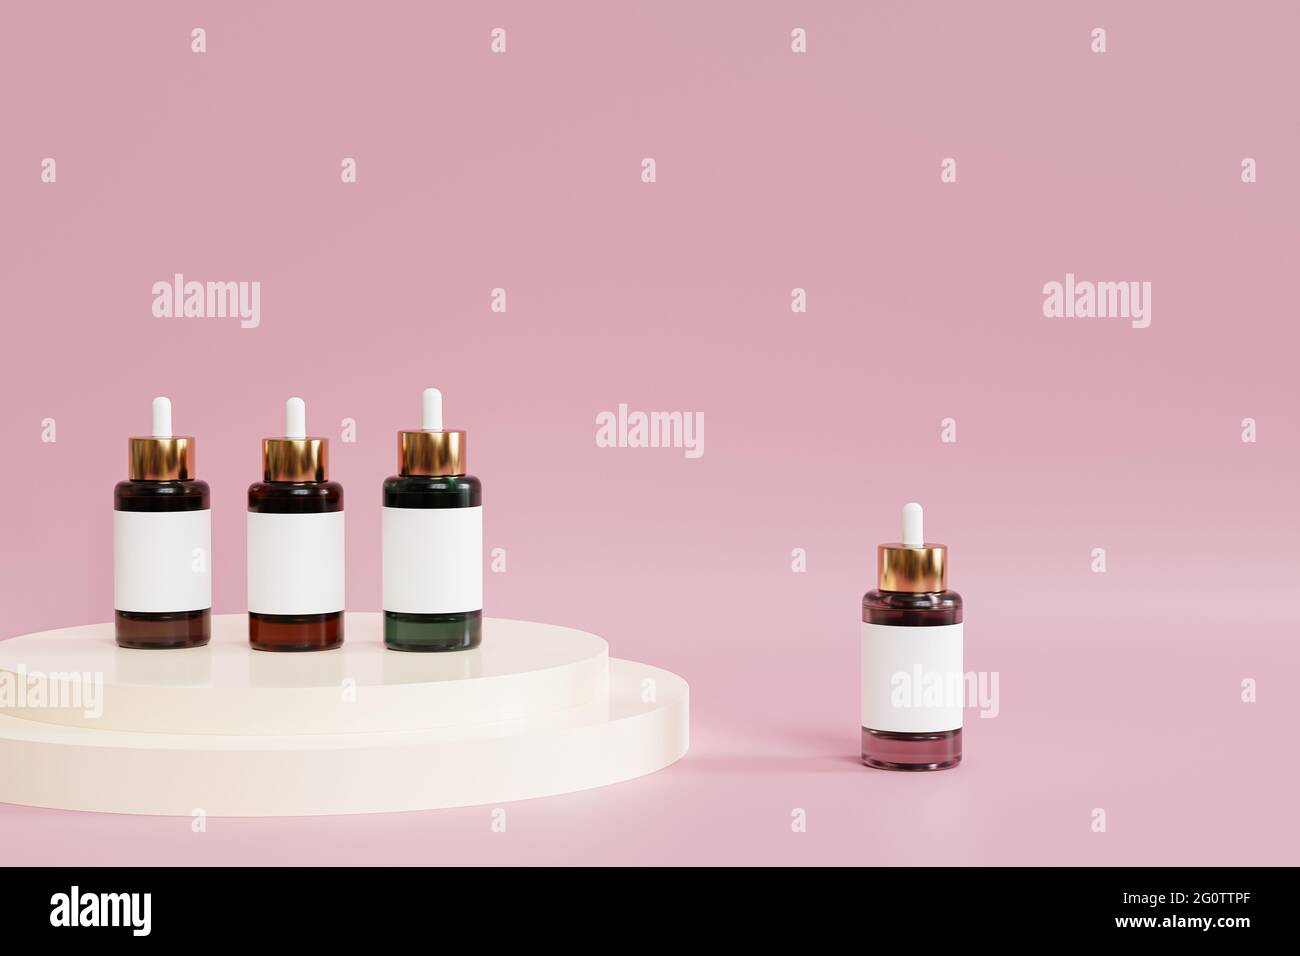 Flacons compte-gouttes Mockup avec étiquette pour produits cosmétiques ou publicité sur fond rose, rendu d'illustration 3d Banque D'Images